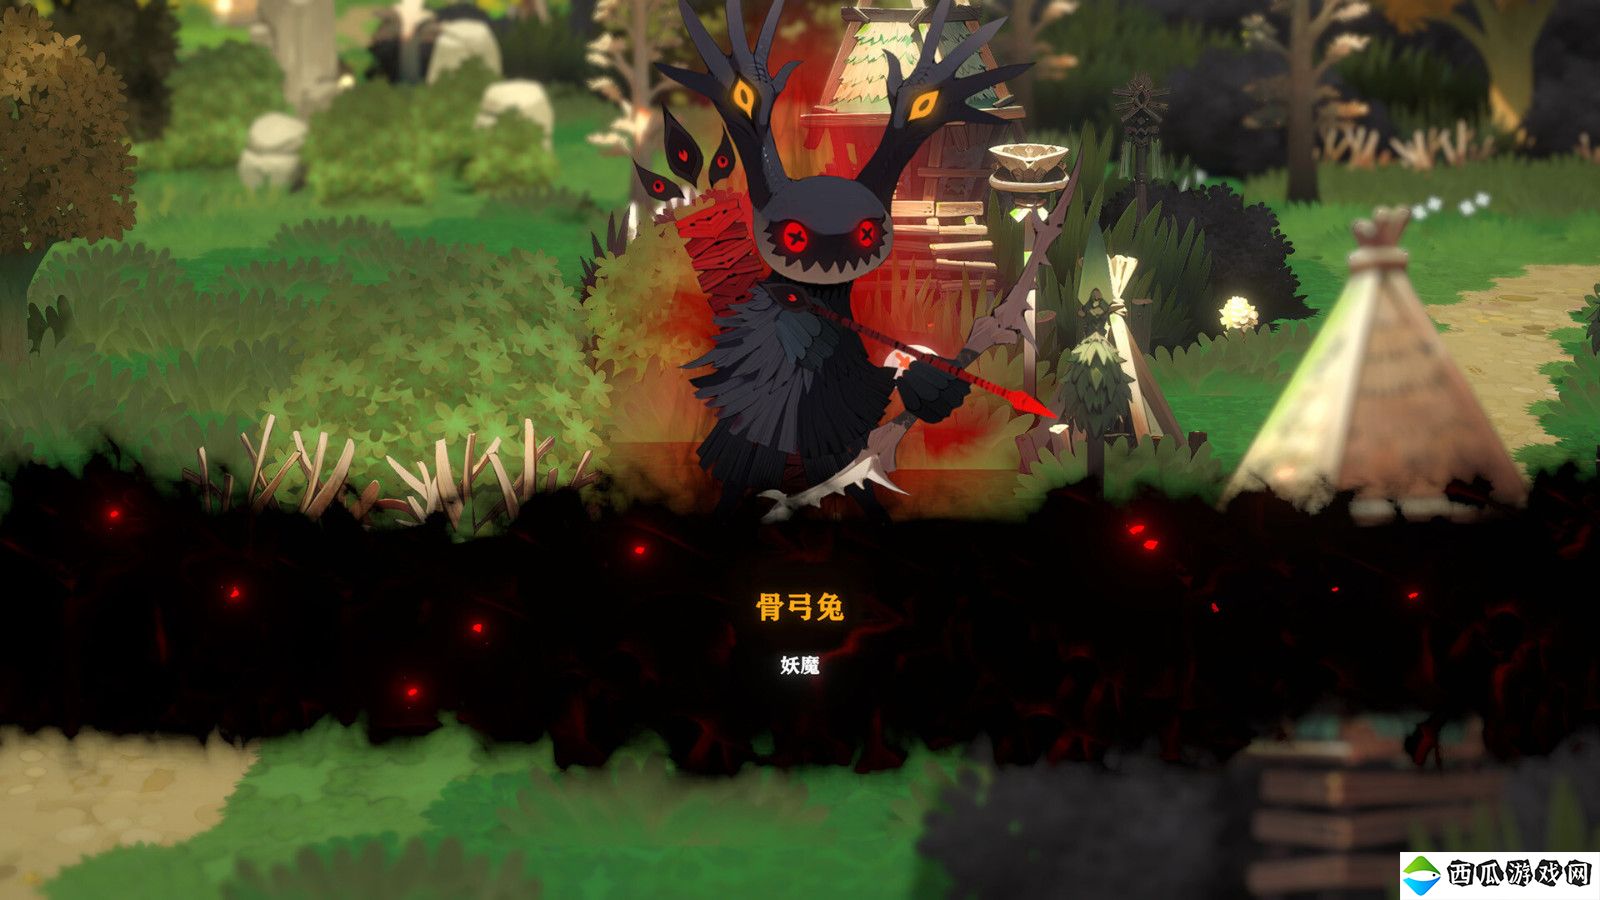 怪物收集RPG冒险游戏《妖之乡》 7月16日正式发售